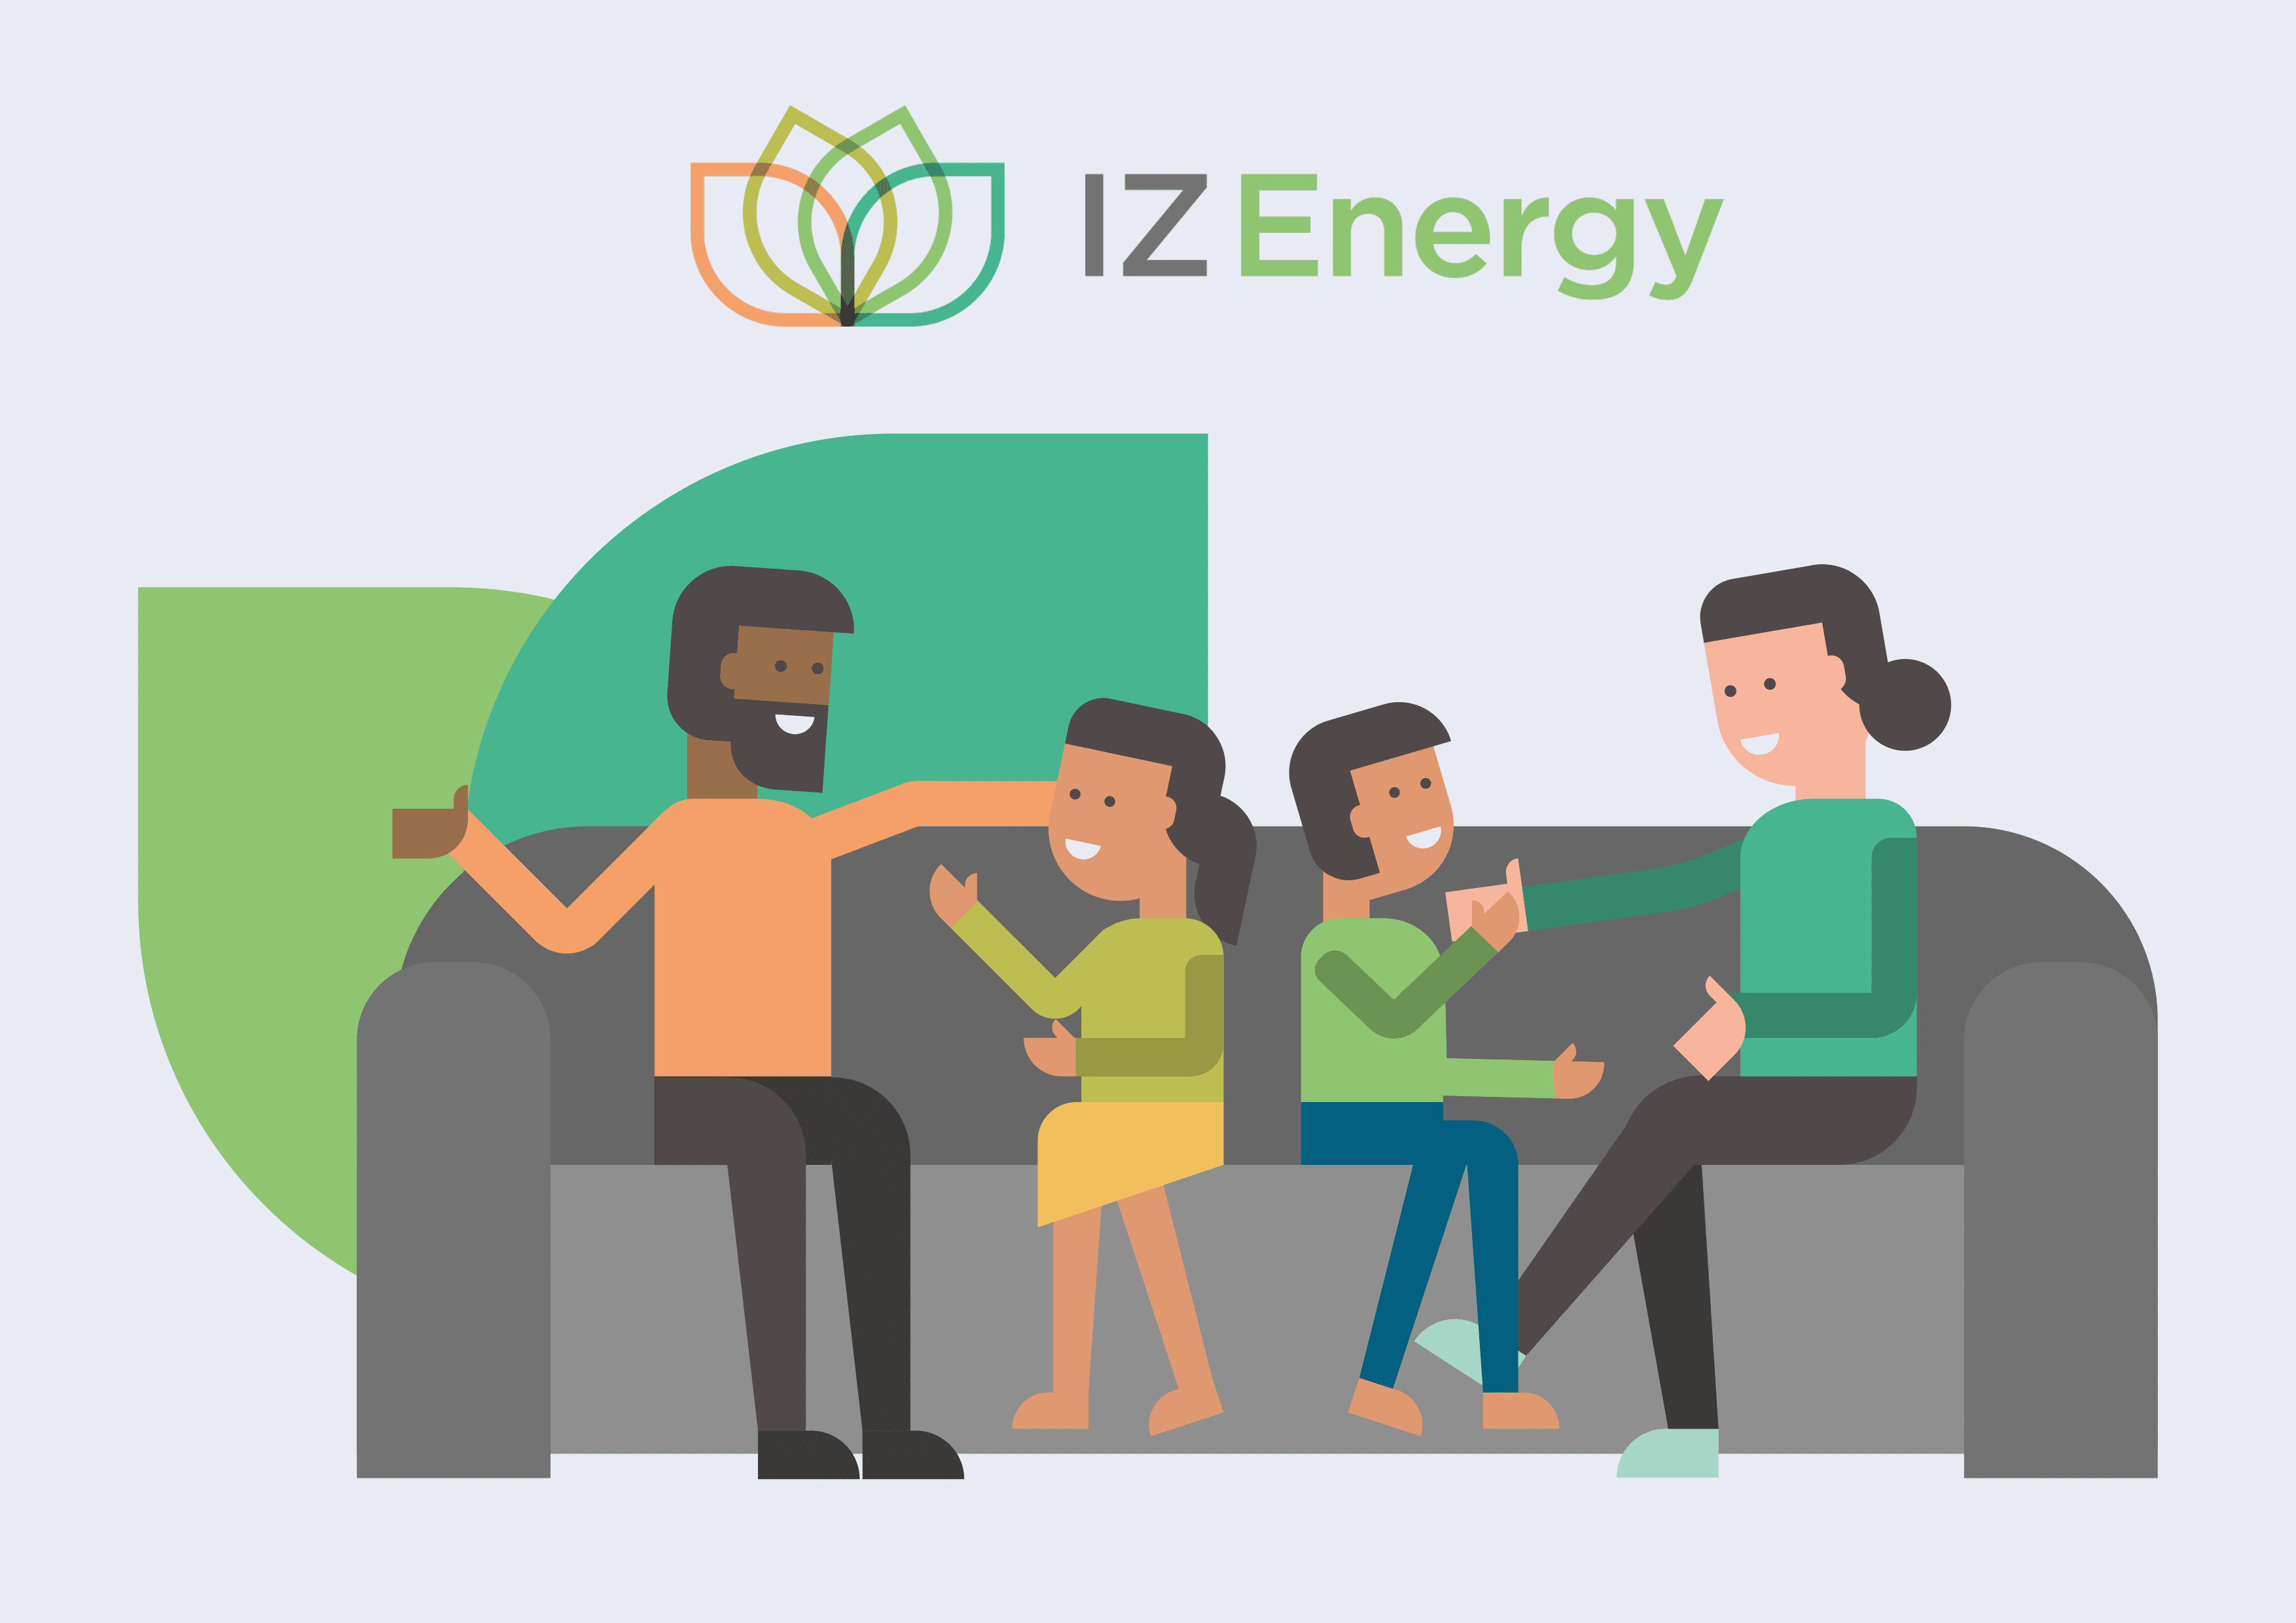 IZ Energy